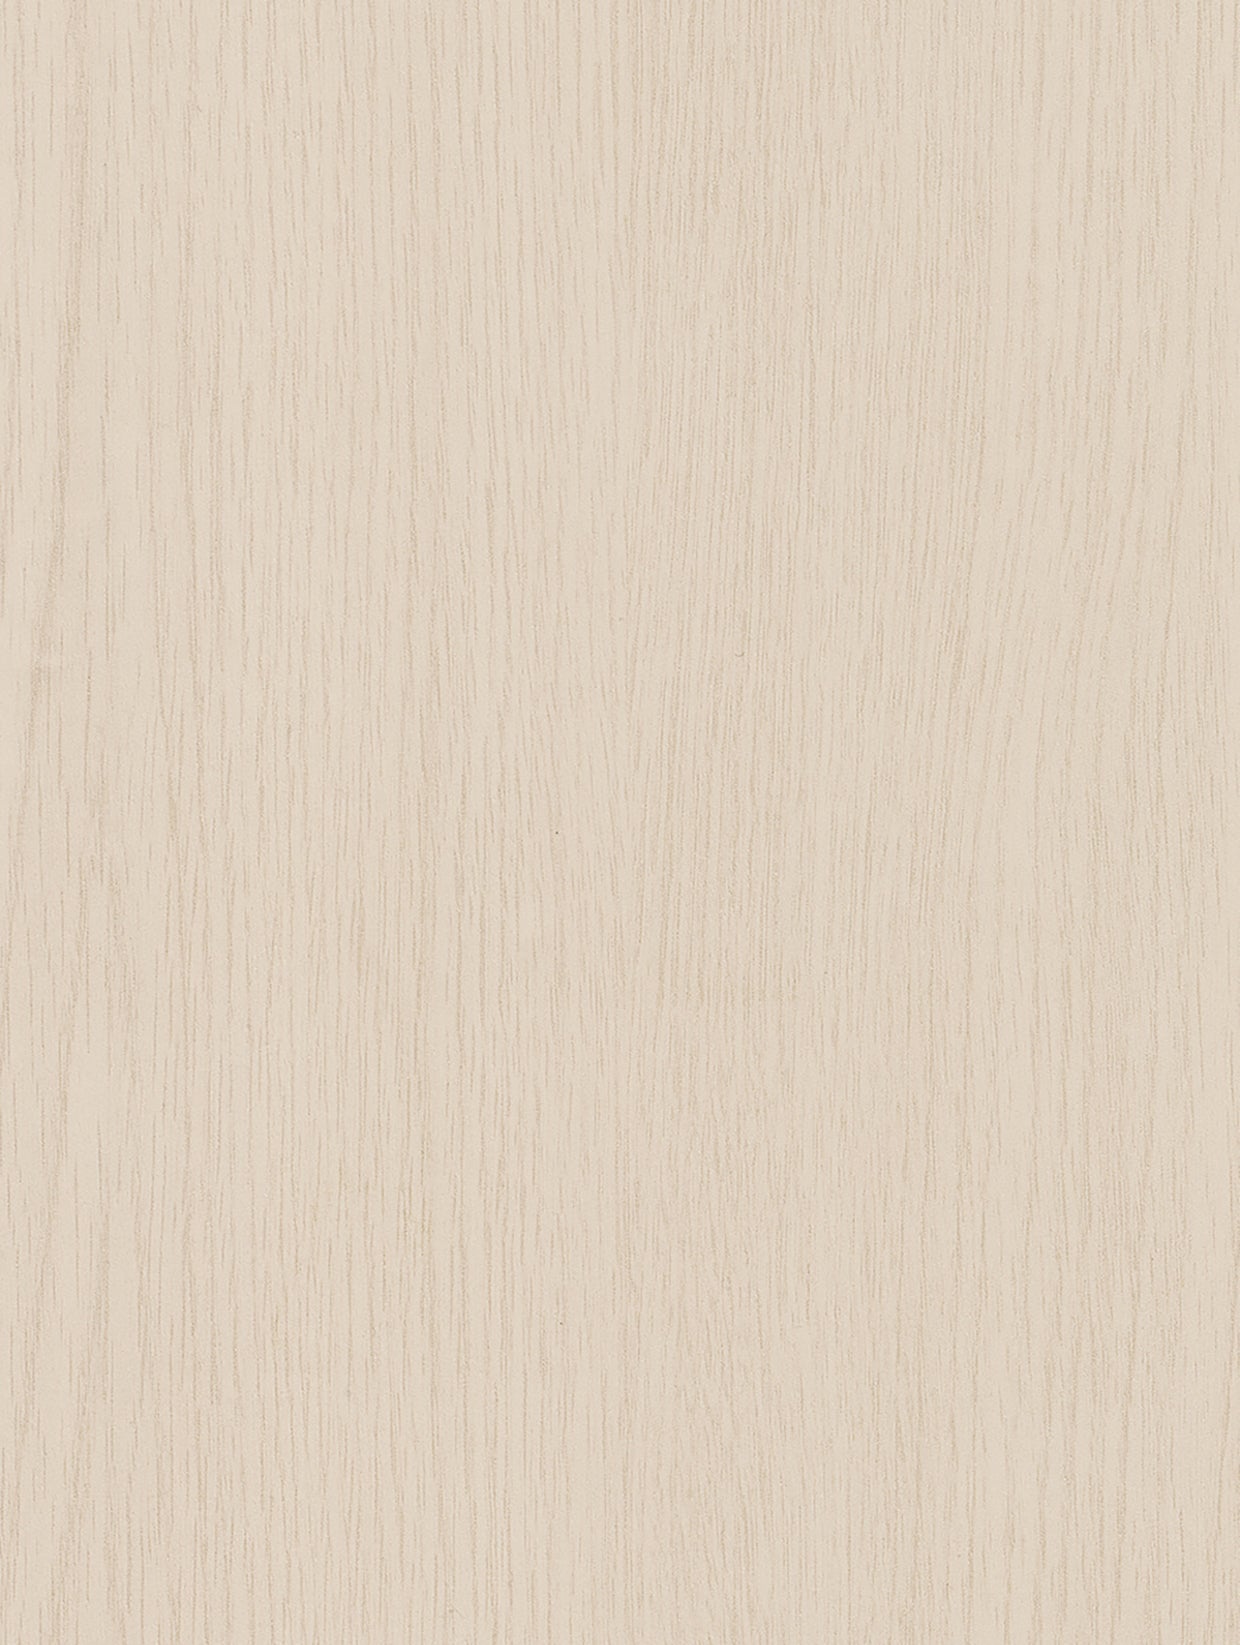 Wood - Painted | Holzdekor Lackiert Soft/Strukturiert Musterfolie A5